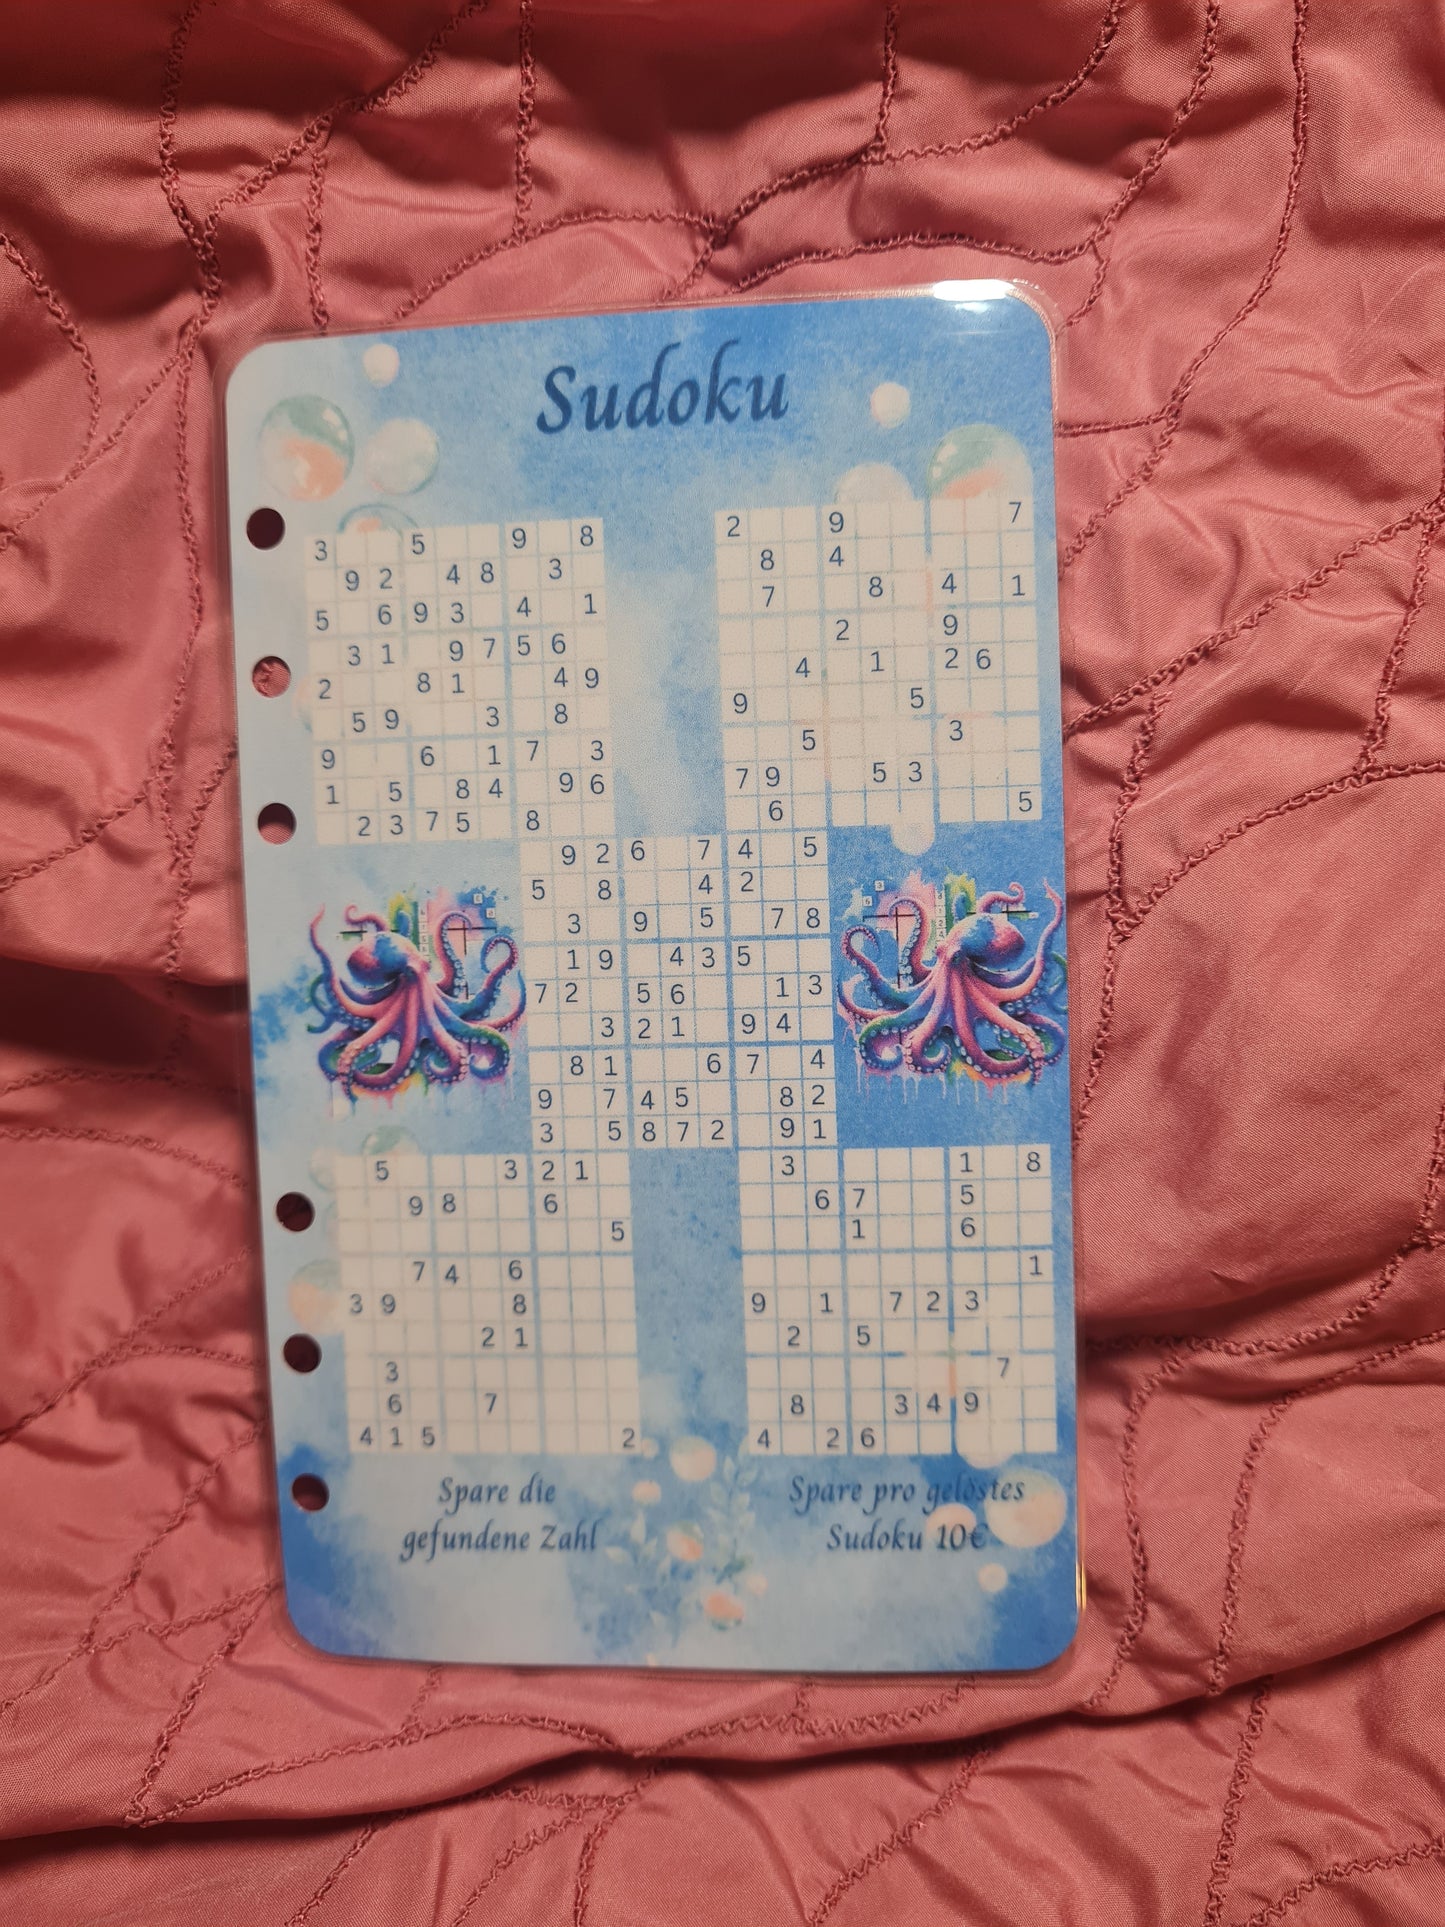 Sudoku - eine knifflige Sparchallenge